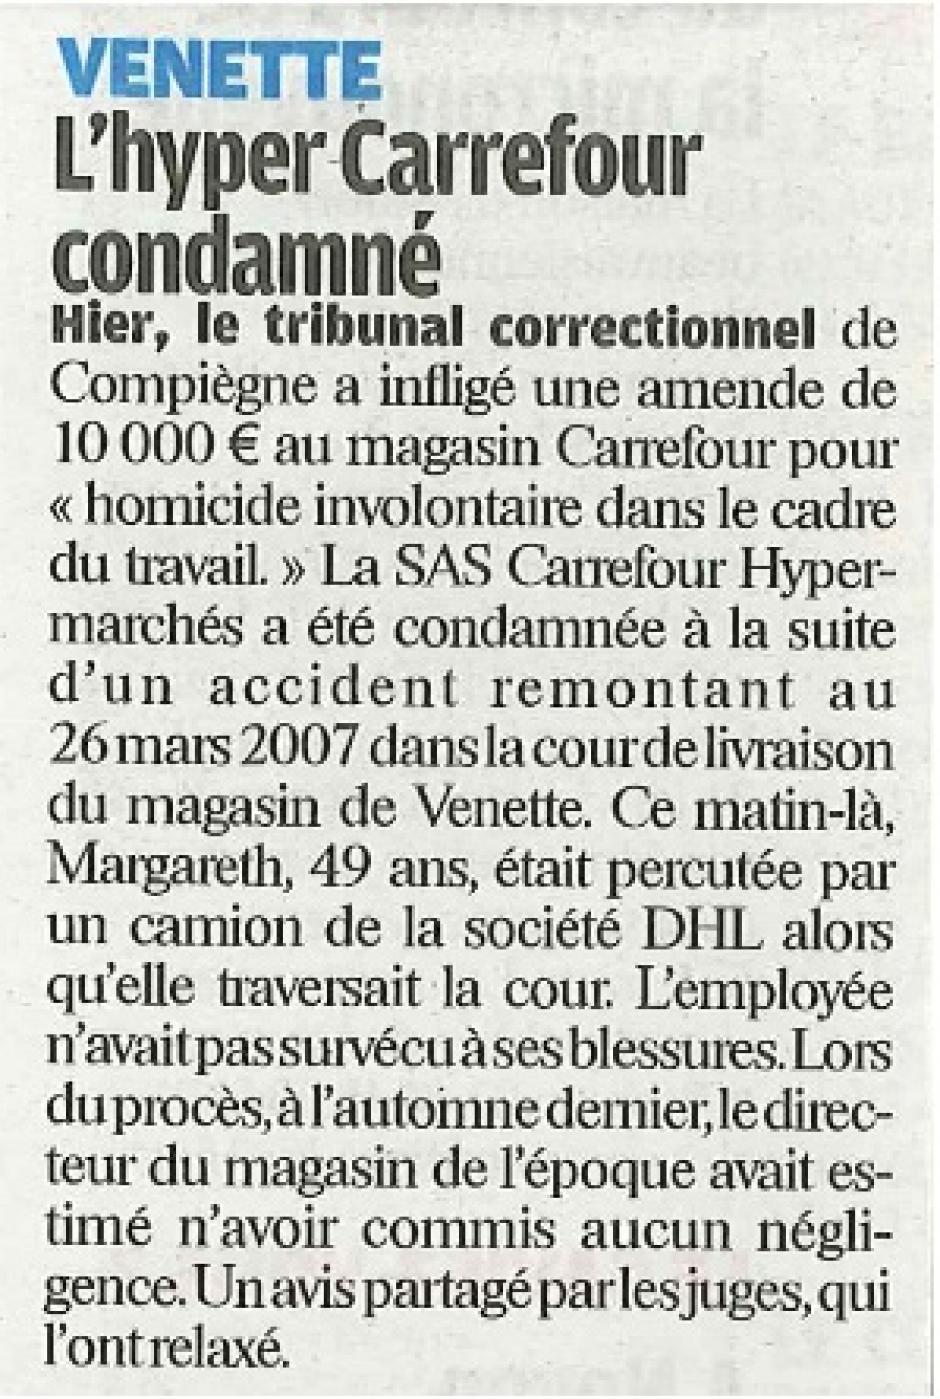 20120125-LeP-Venette-Carrefour condamné pour homicide involontaire